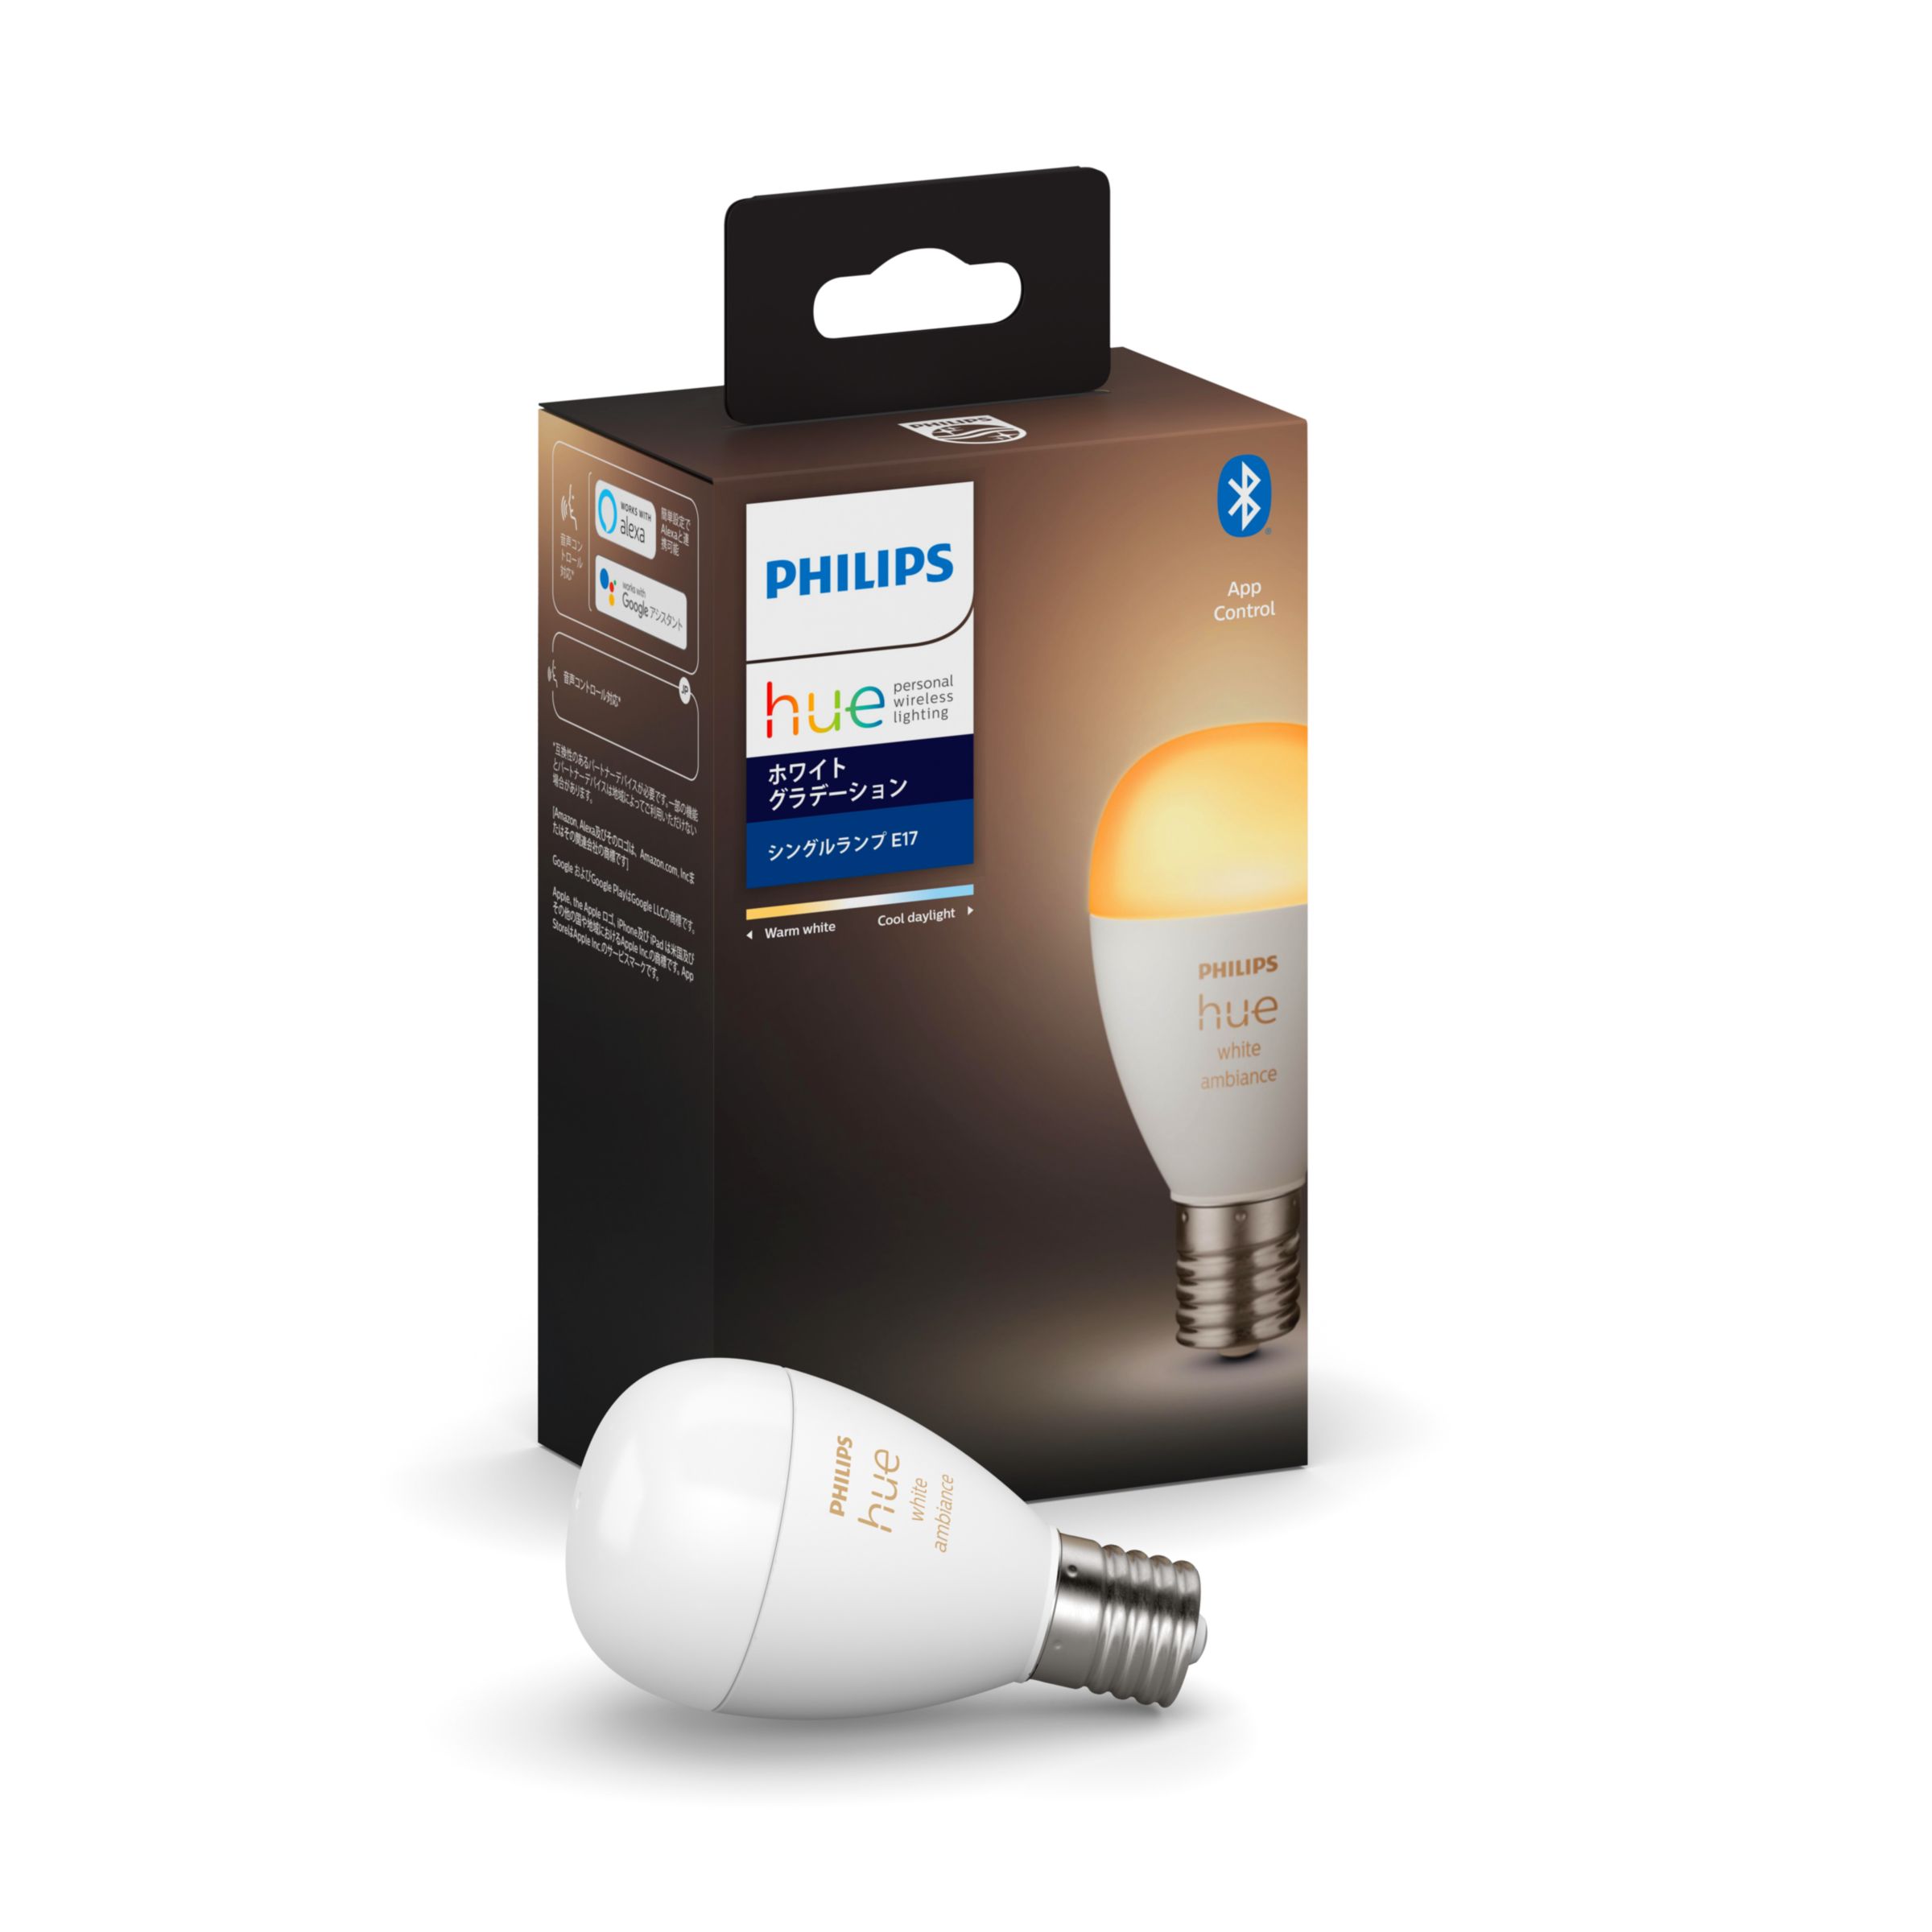 32％割引魅力的な Philips Hue(フィリップスヒュー)スマートLED電球 E26 蛍光灯/電球 ライト/照明-OTA.ON